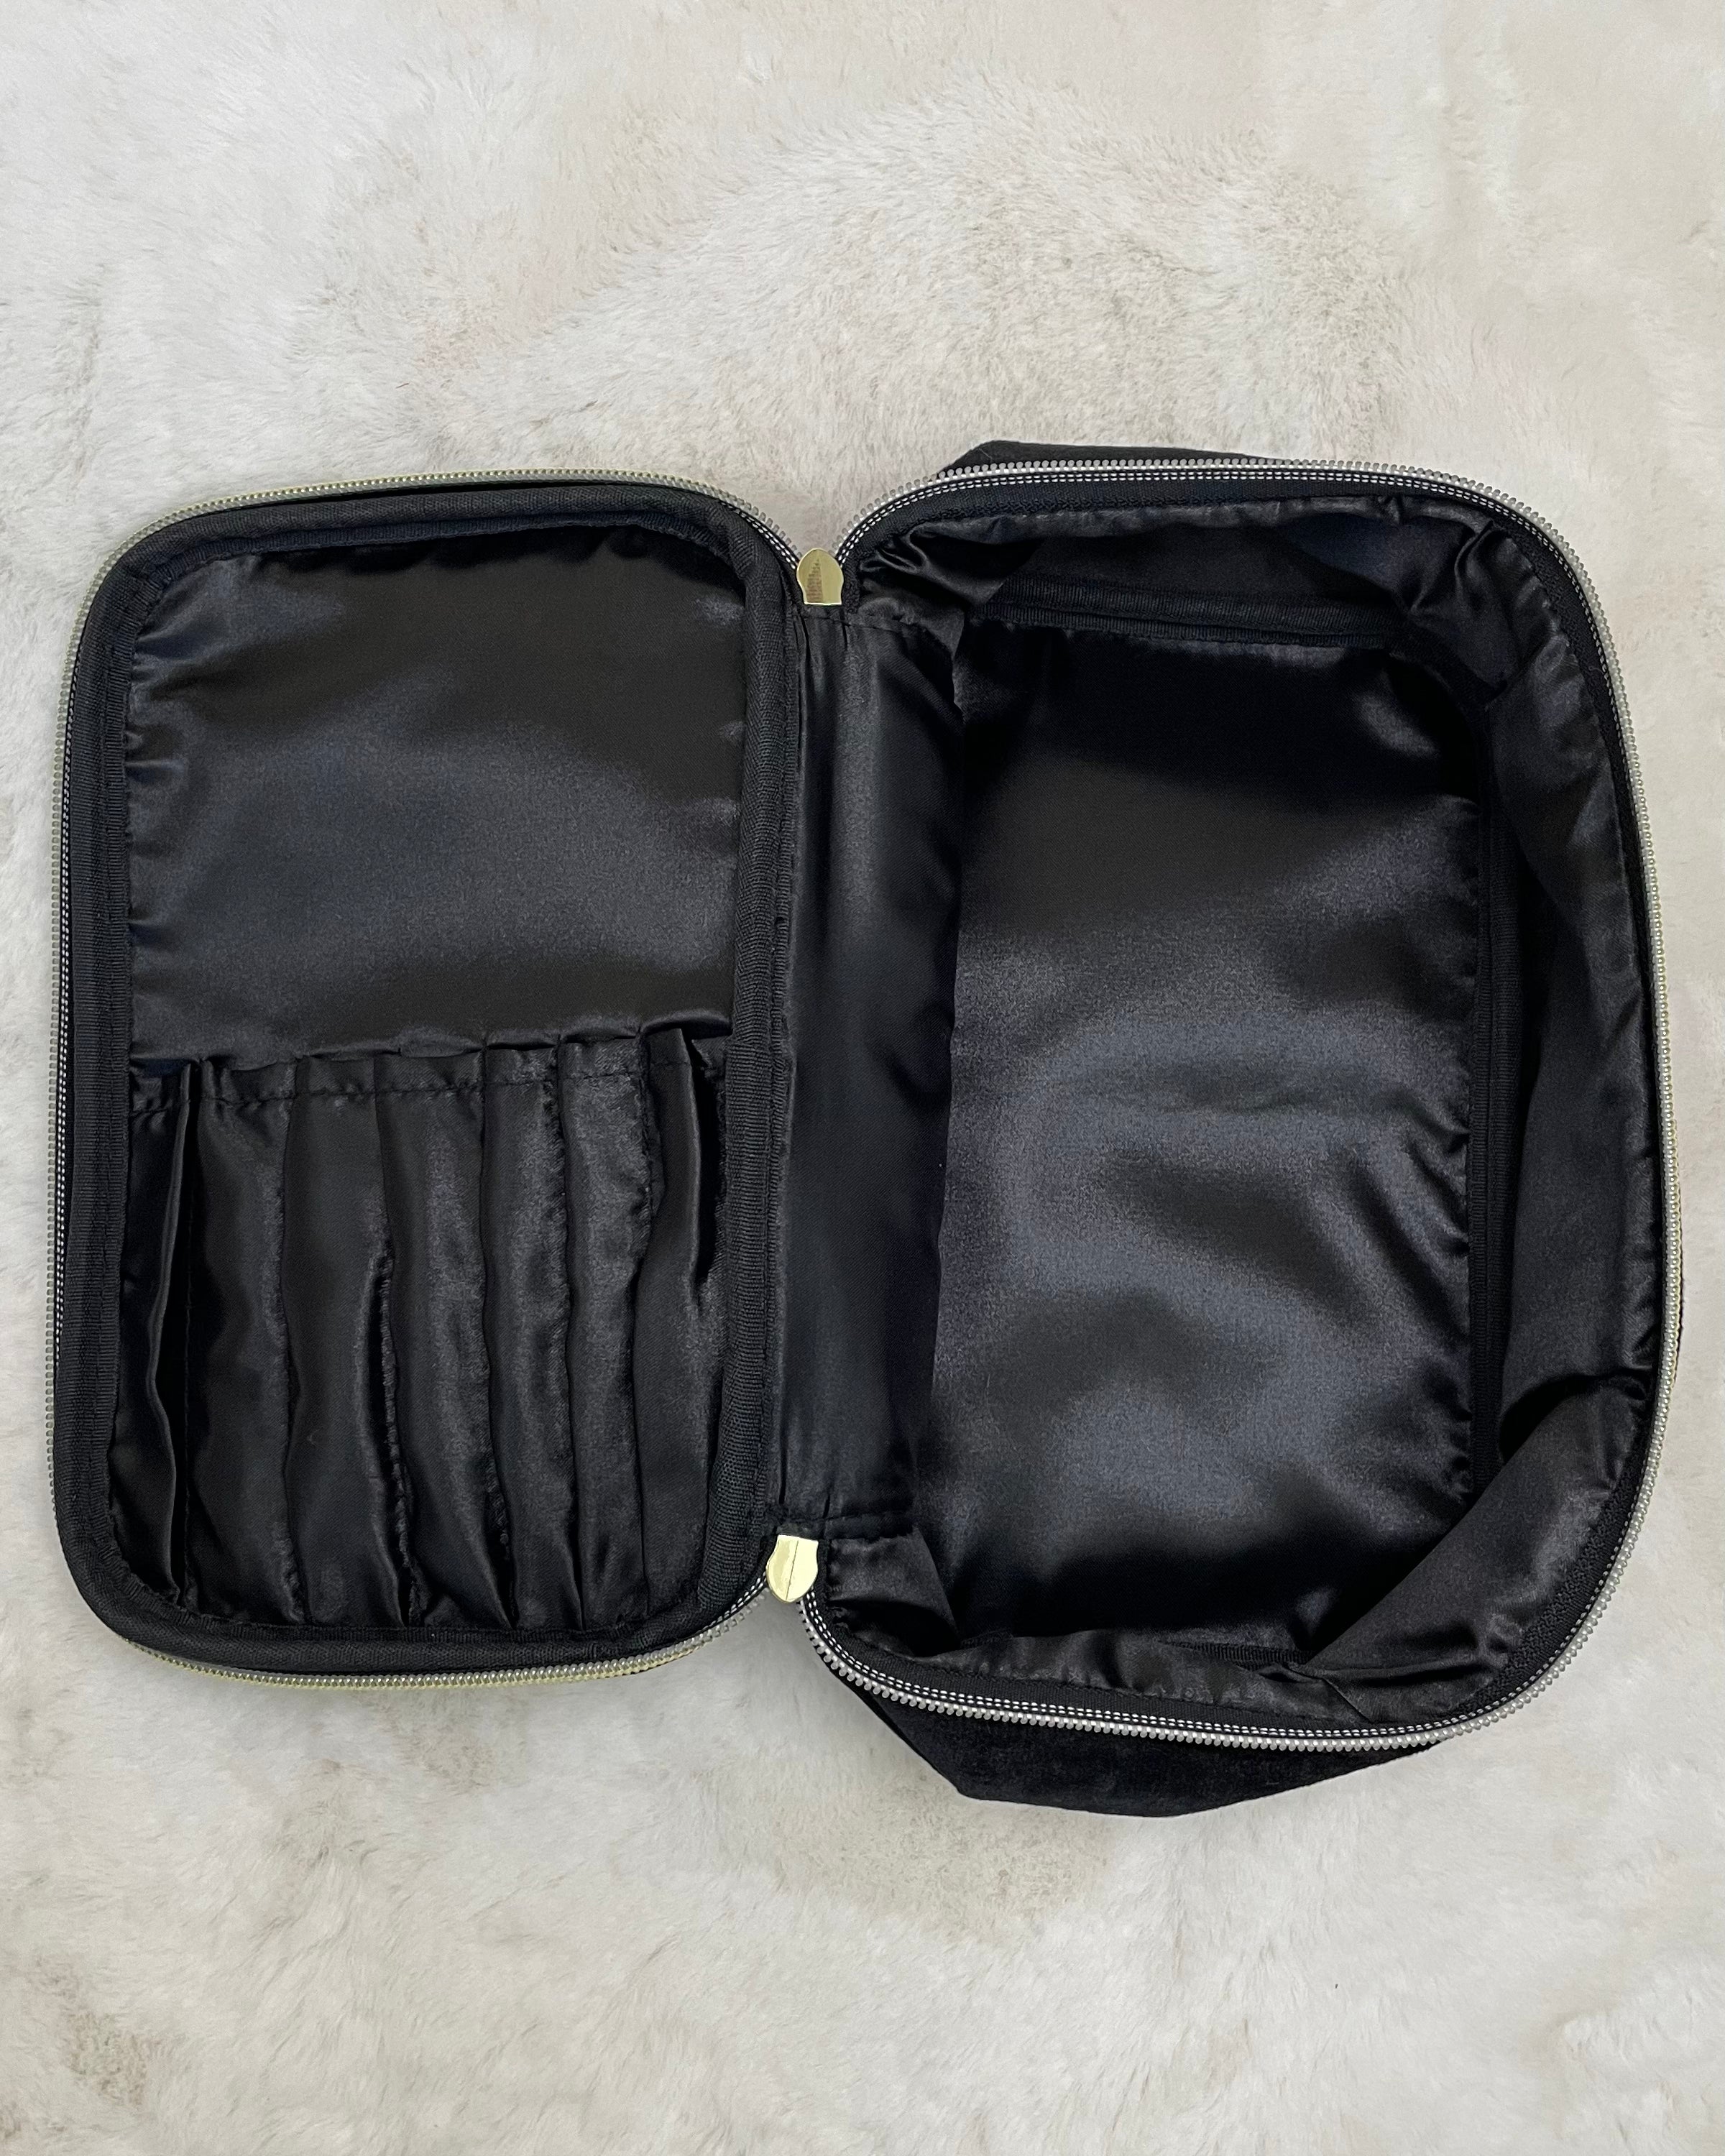 Sent Packing Black Velvet Toiletry Travel Case-Regular-Shop-Womens-Boutique-Clothing